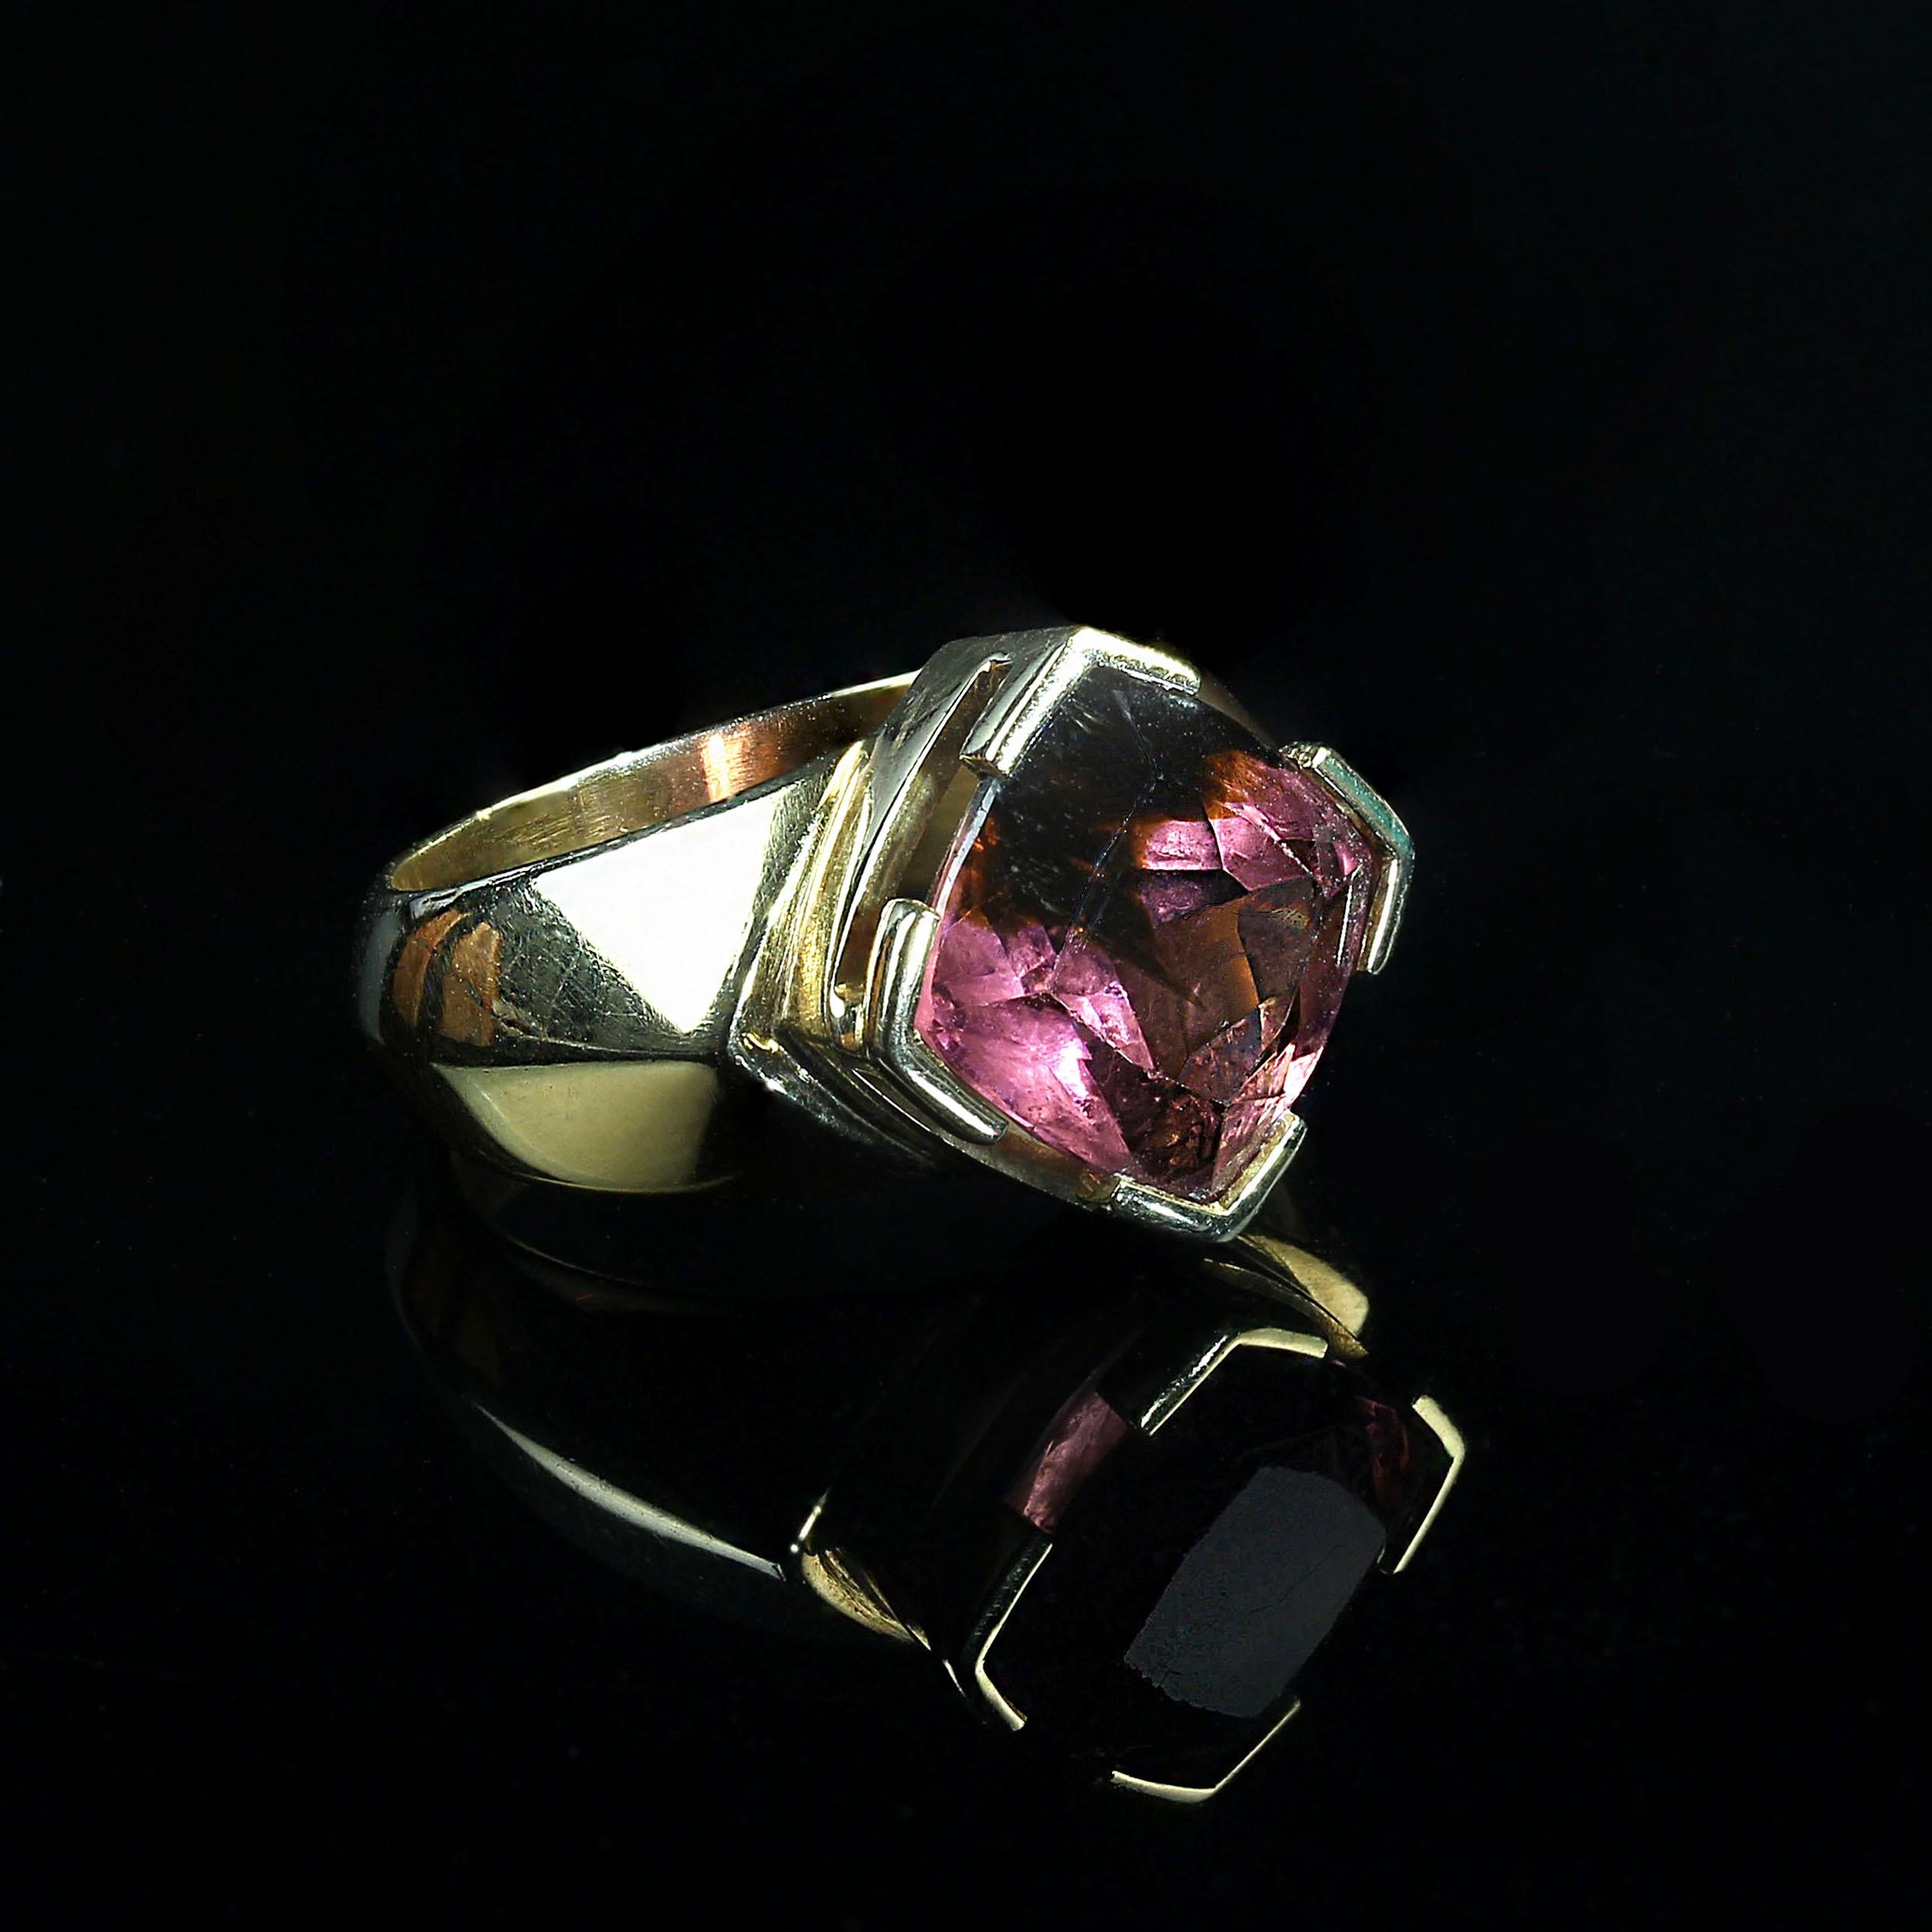 C'est le cadeau idéal.  Une magnifique tourmaline brésilienne rose et verte de 10x10mm, taillée en coussin, est sertie dans un anneau en or jaune 18K fait main. La bague est en or jaune 18 carats, riche et luxueux, pour mettre en valeur cette